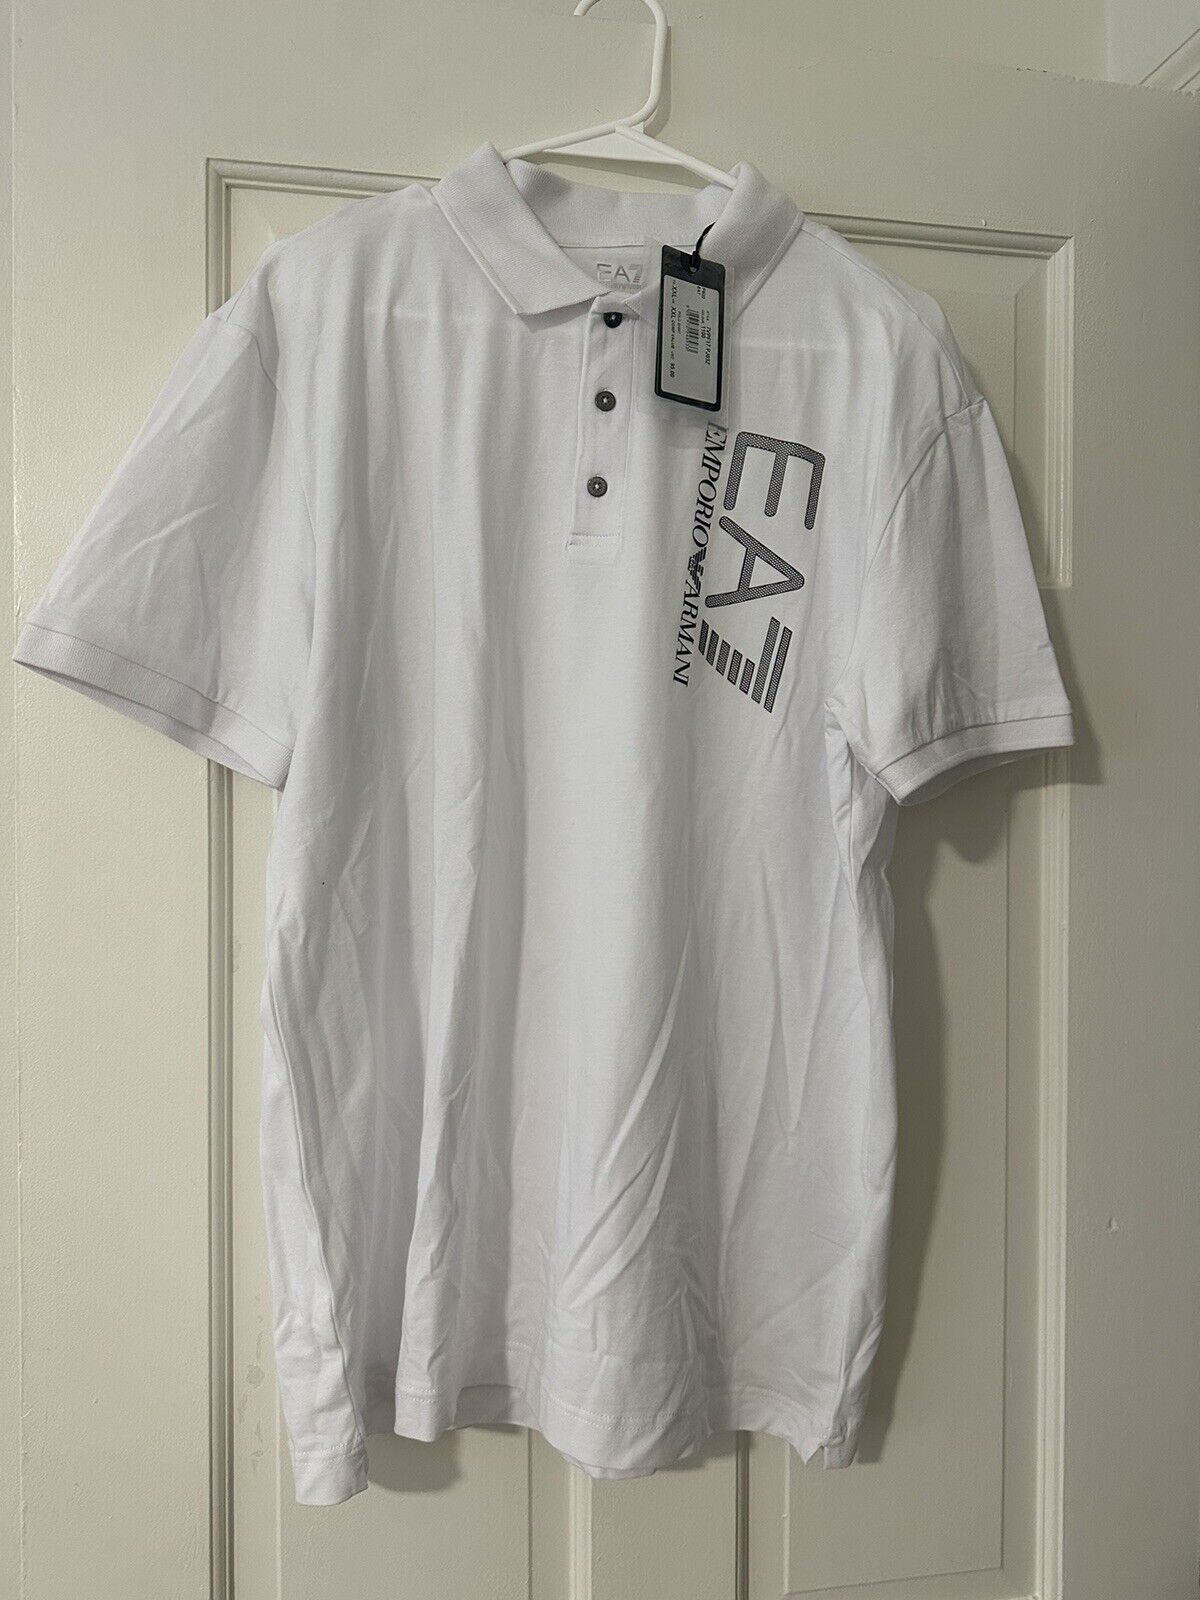 Emporio Armani  Size   XXL Mens T-Shirt   White New Emporio Armani Does not apply